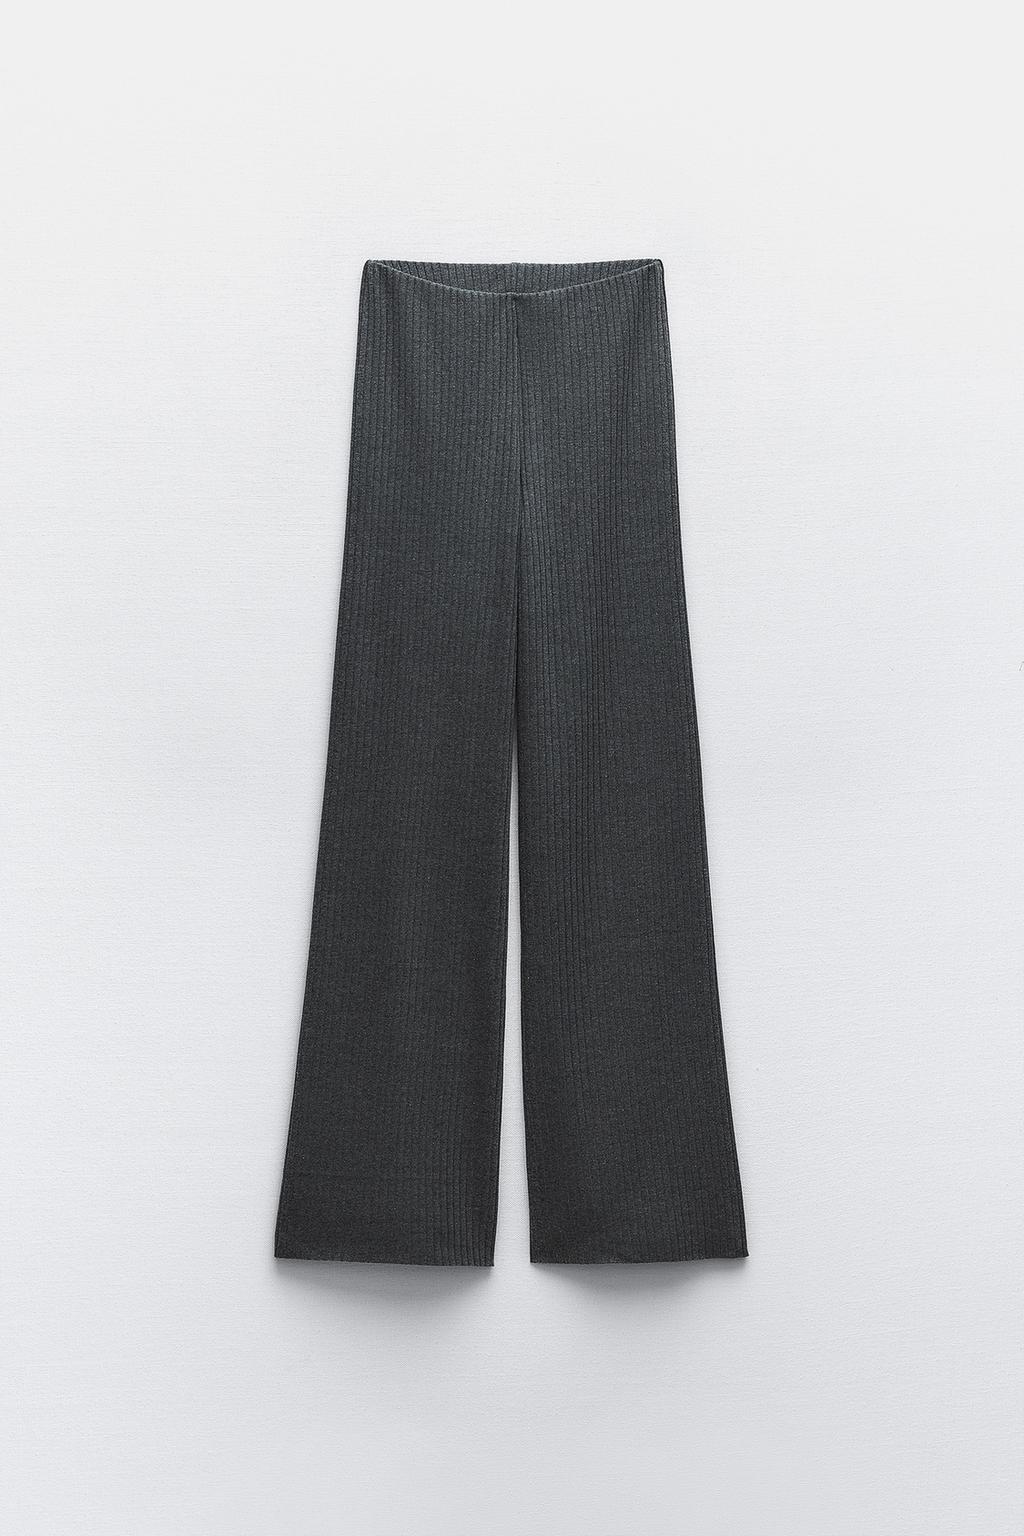 Широкие брюки в ребрику ZARA, серый мергель брюки женские хлопково льняные с широкими штанинами винтажные свободные шаровары для йоги модные длинные штаны с эластичным поясом больш